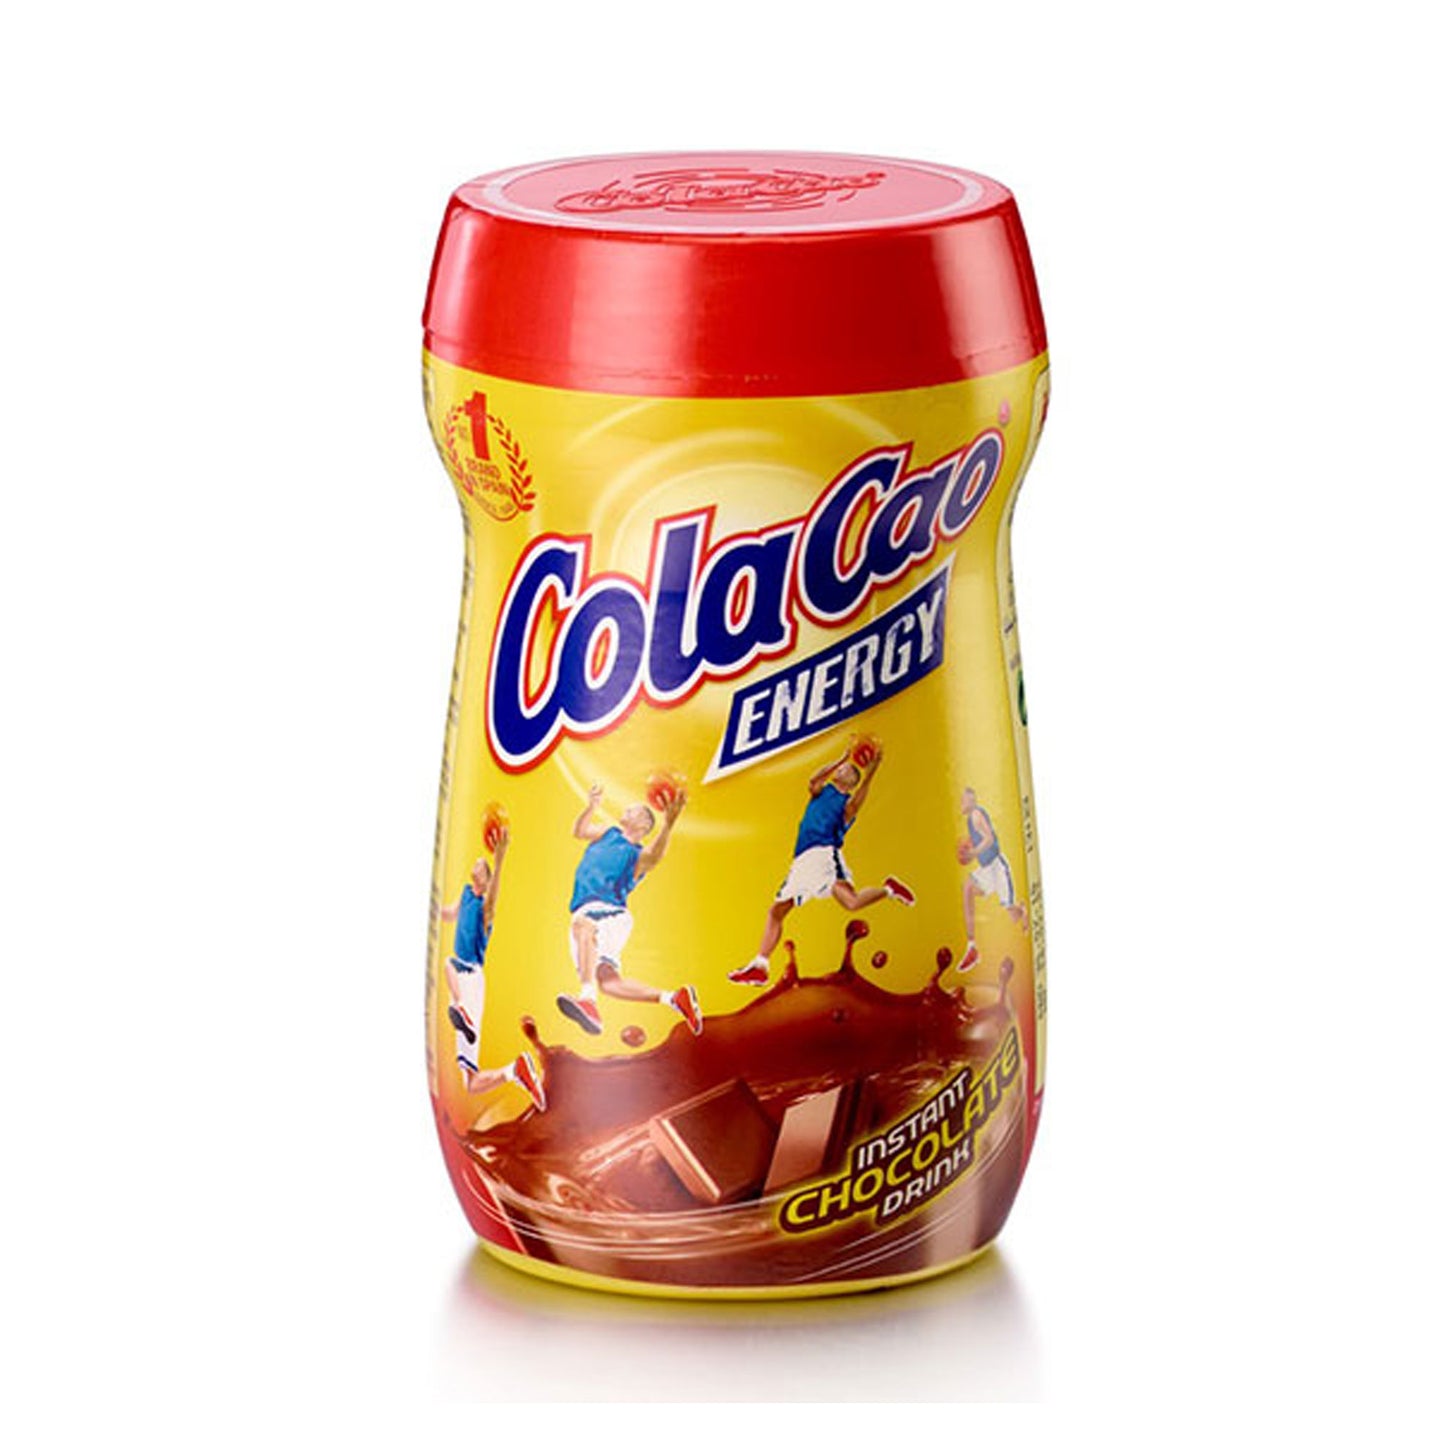 Chocolate COLACAO 400g - Chocolate en Polvo La casa del bacalao